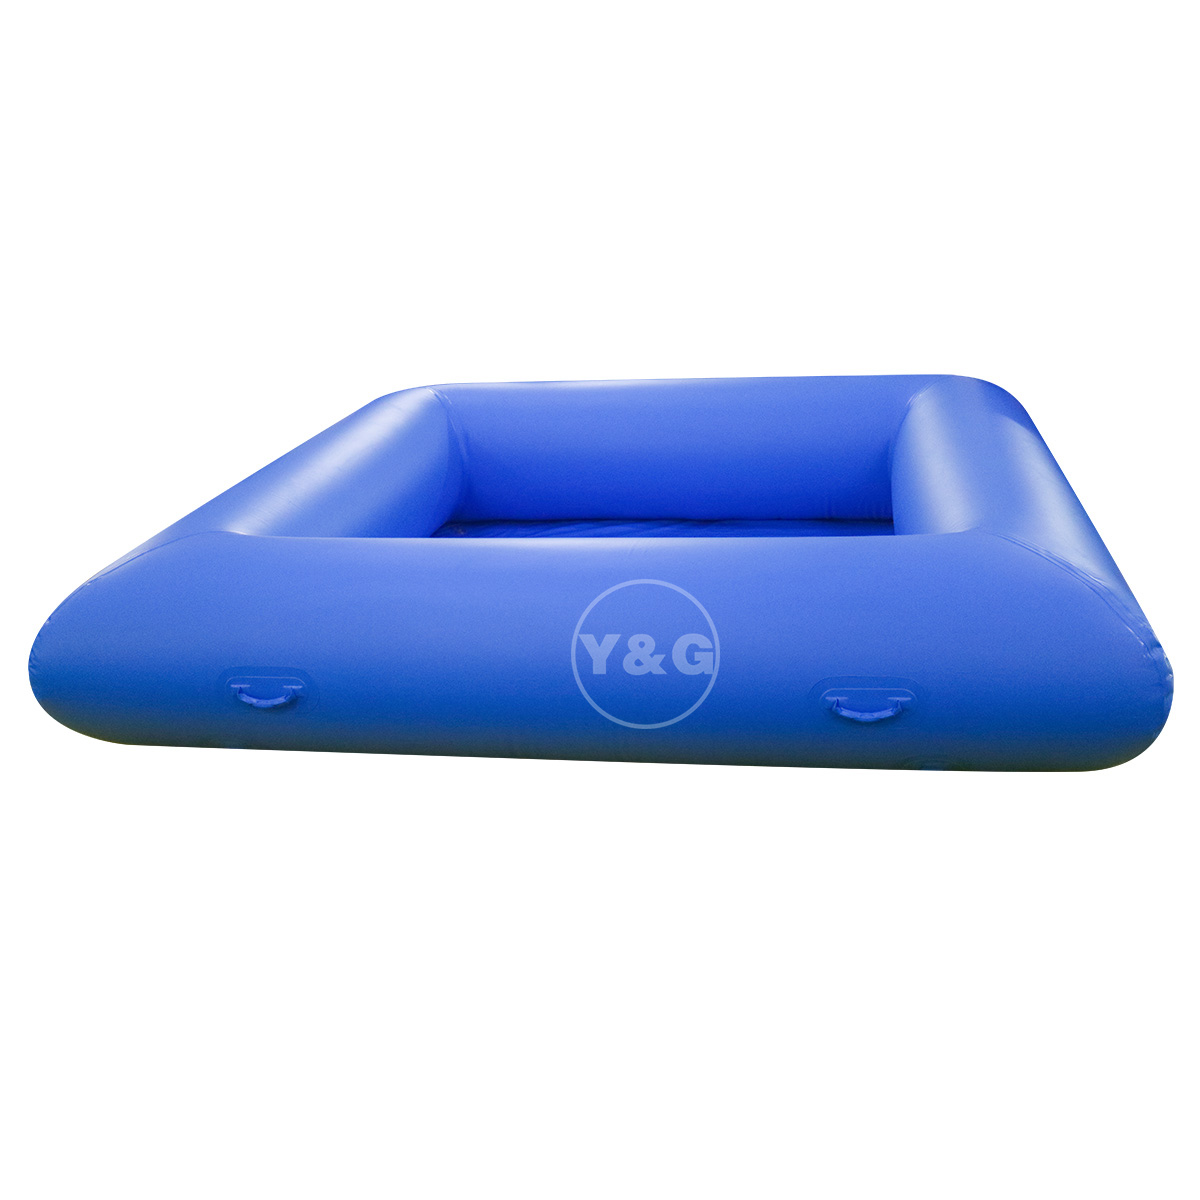 Продается коммерческий надувной синий бассейн06